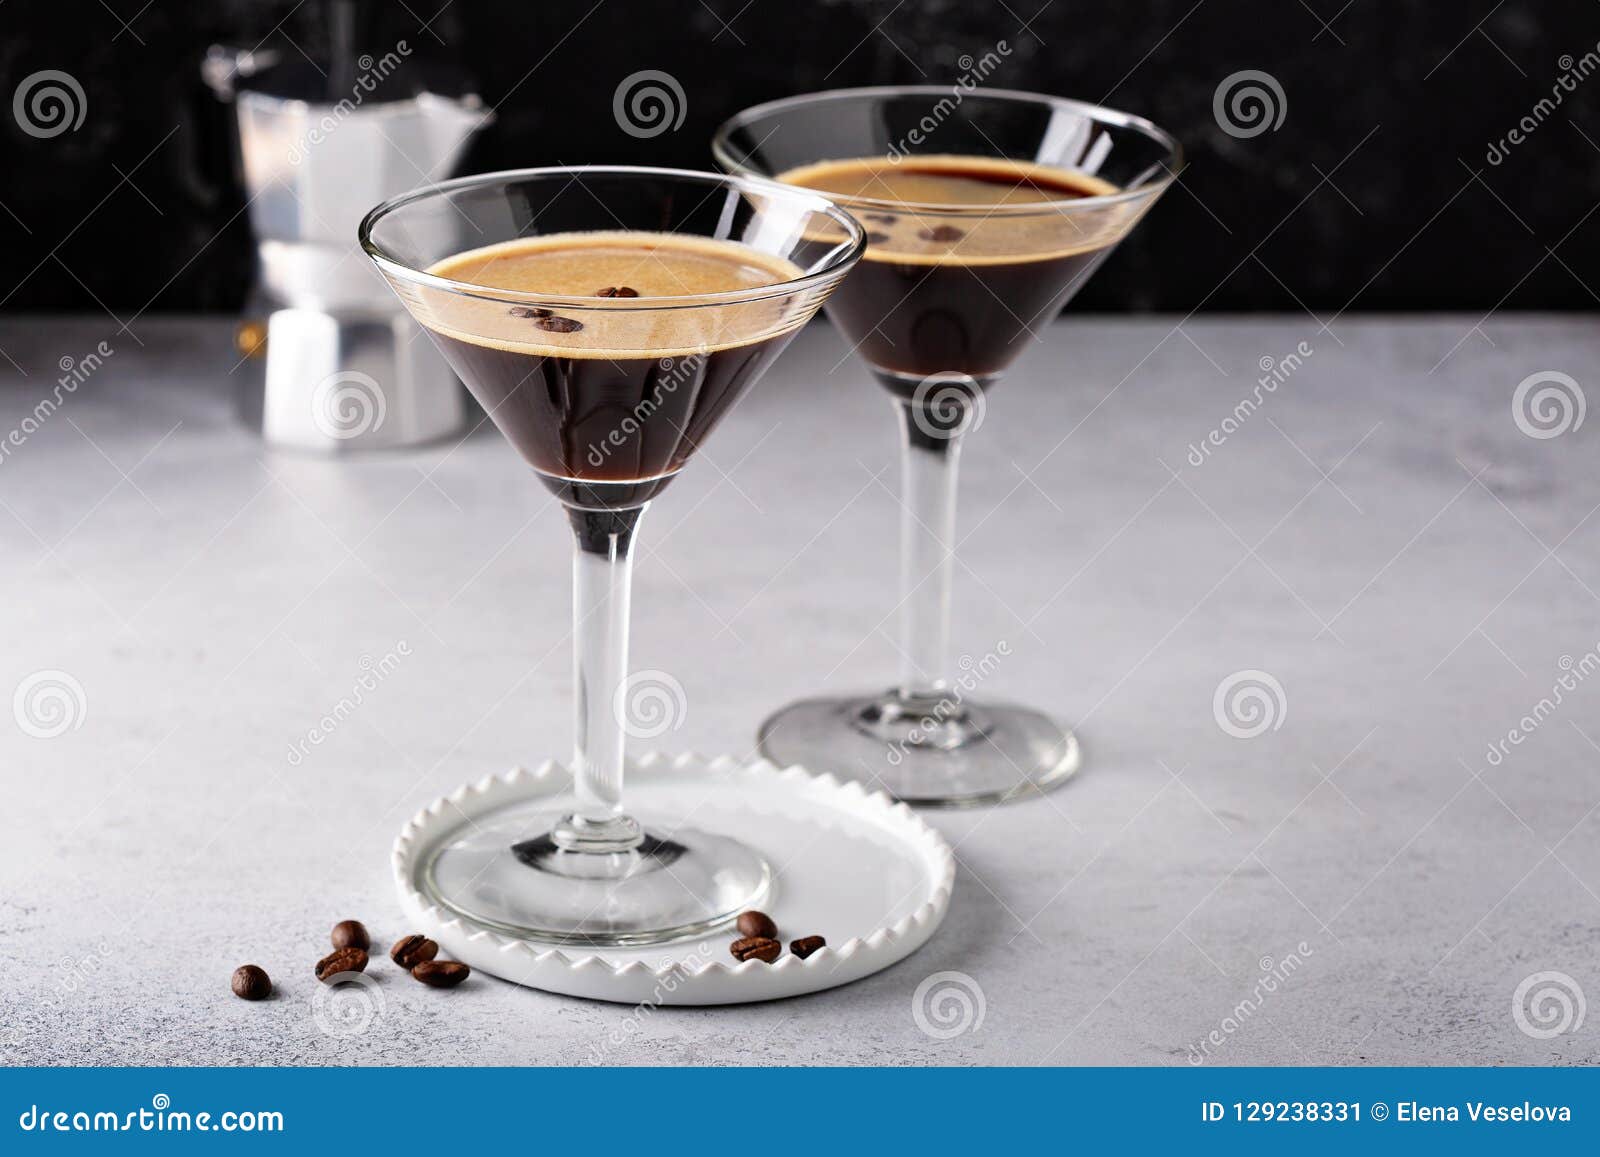 espresso martini in two glasses